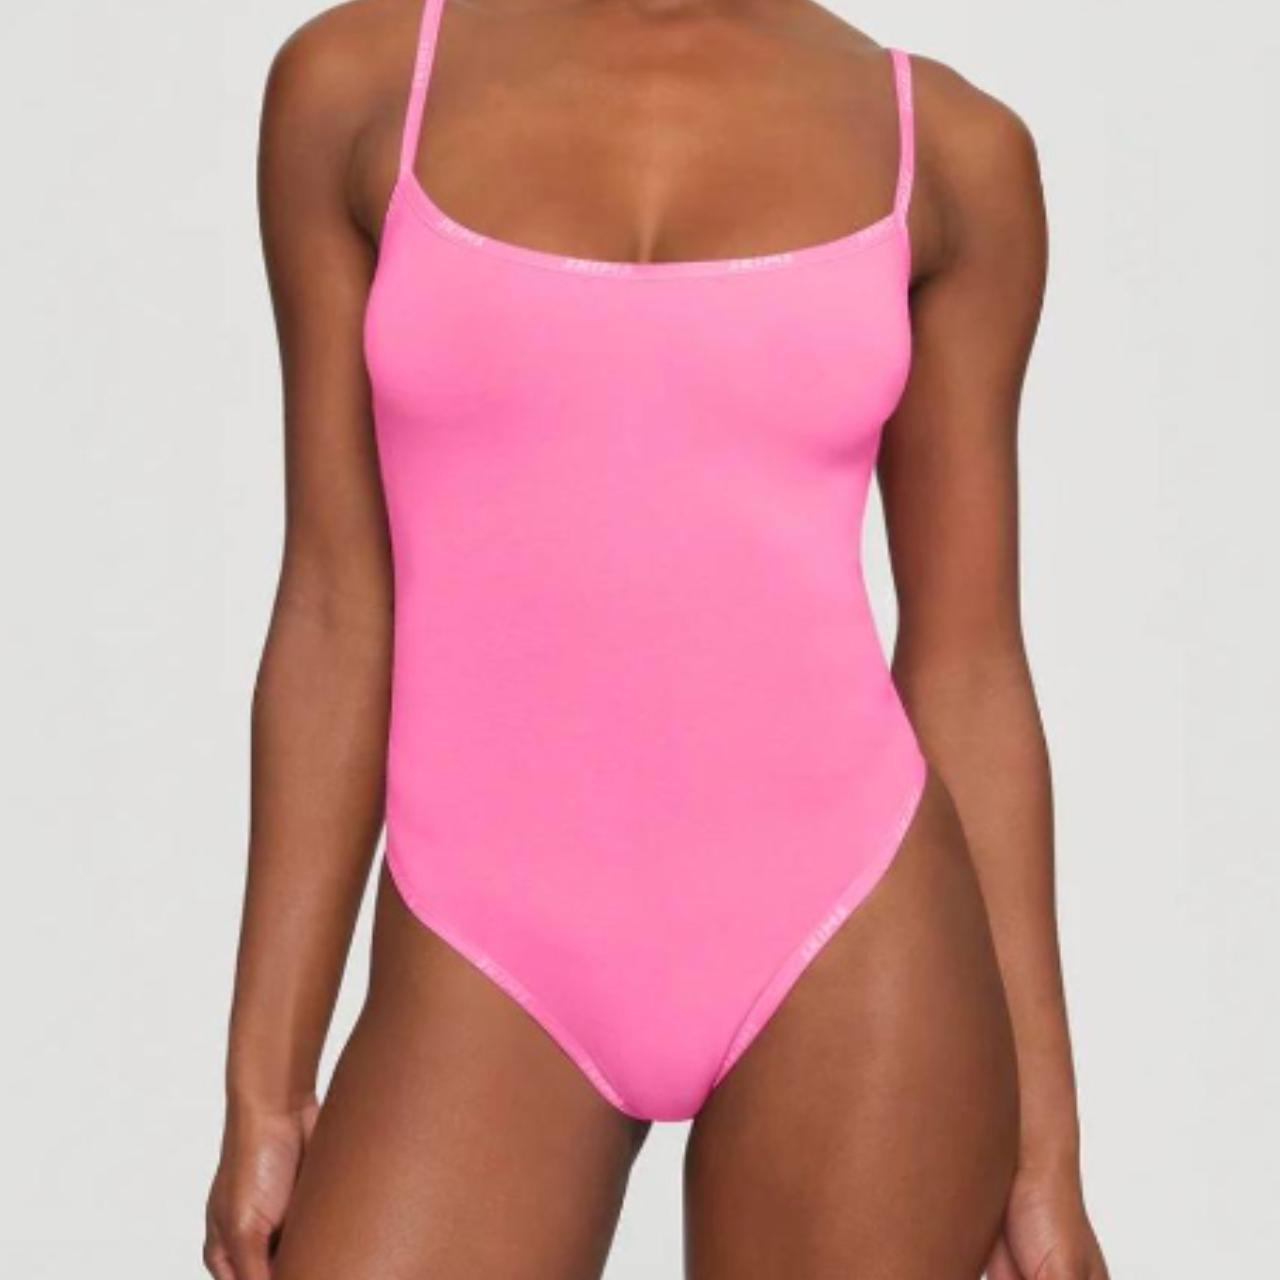 Skims Women's Pink Bodysuit -perfect condition, worn - Depop